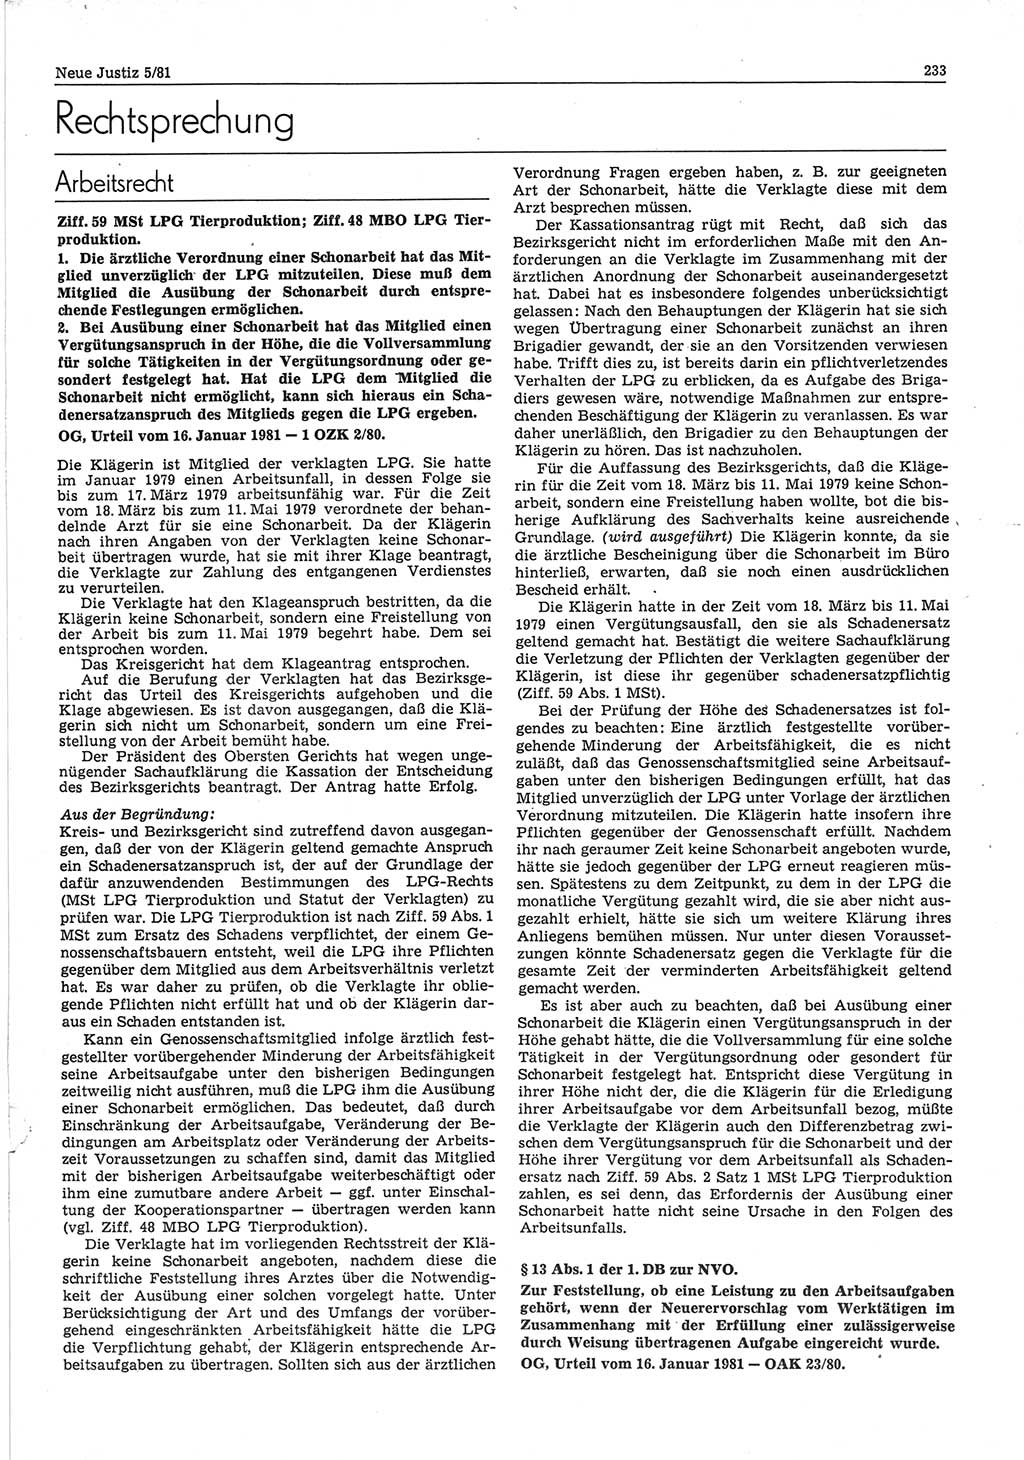 Neue Justiz (NJ), Zeitschrift für sozialistisches Recht und Gesetzlichkeit [Deutsche Demokratische Republik (DDR)], 35. Jahrgang 1981, Seite 233 (NJ DDR 1981, S. 233)